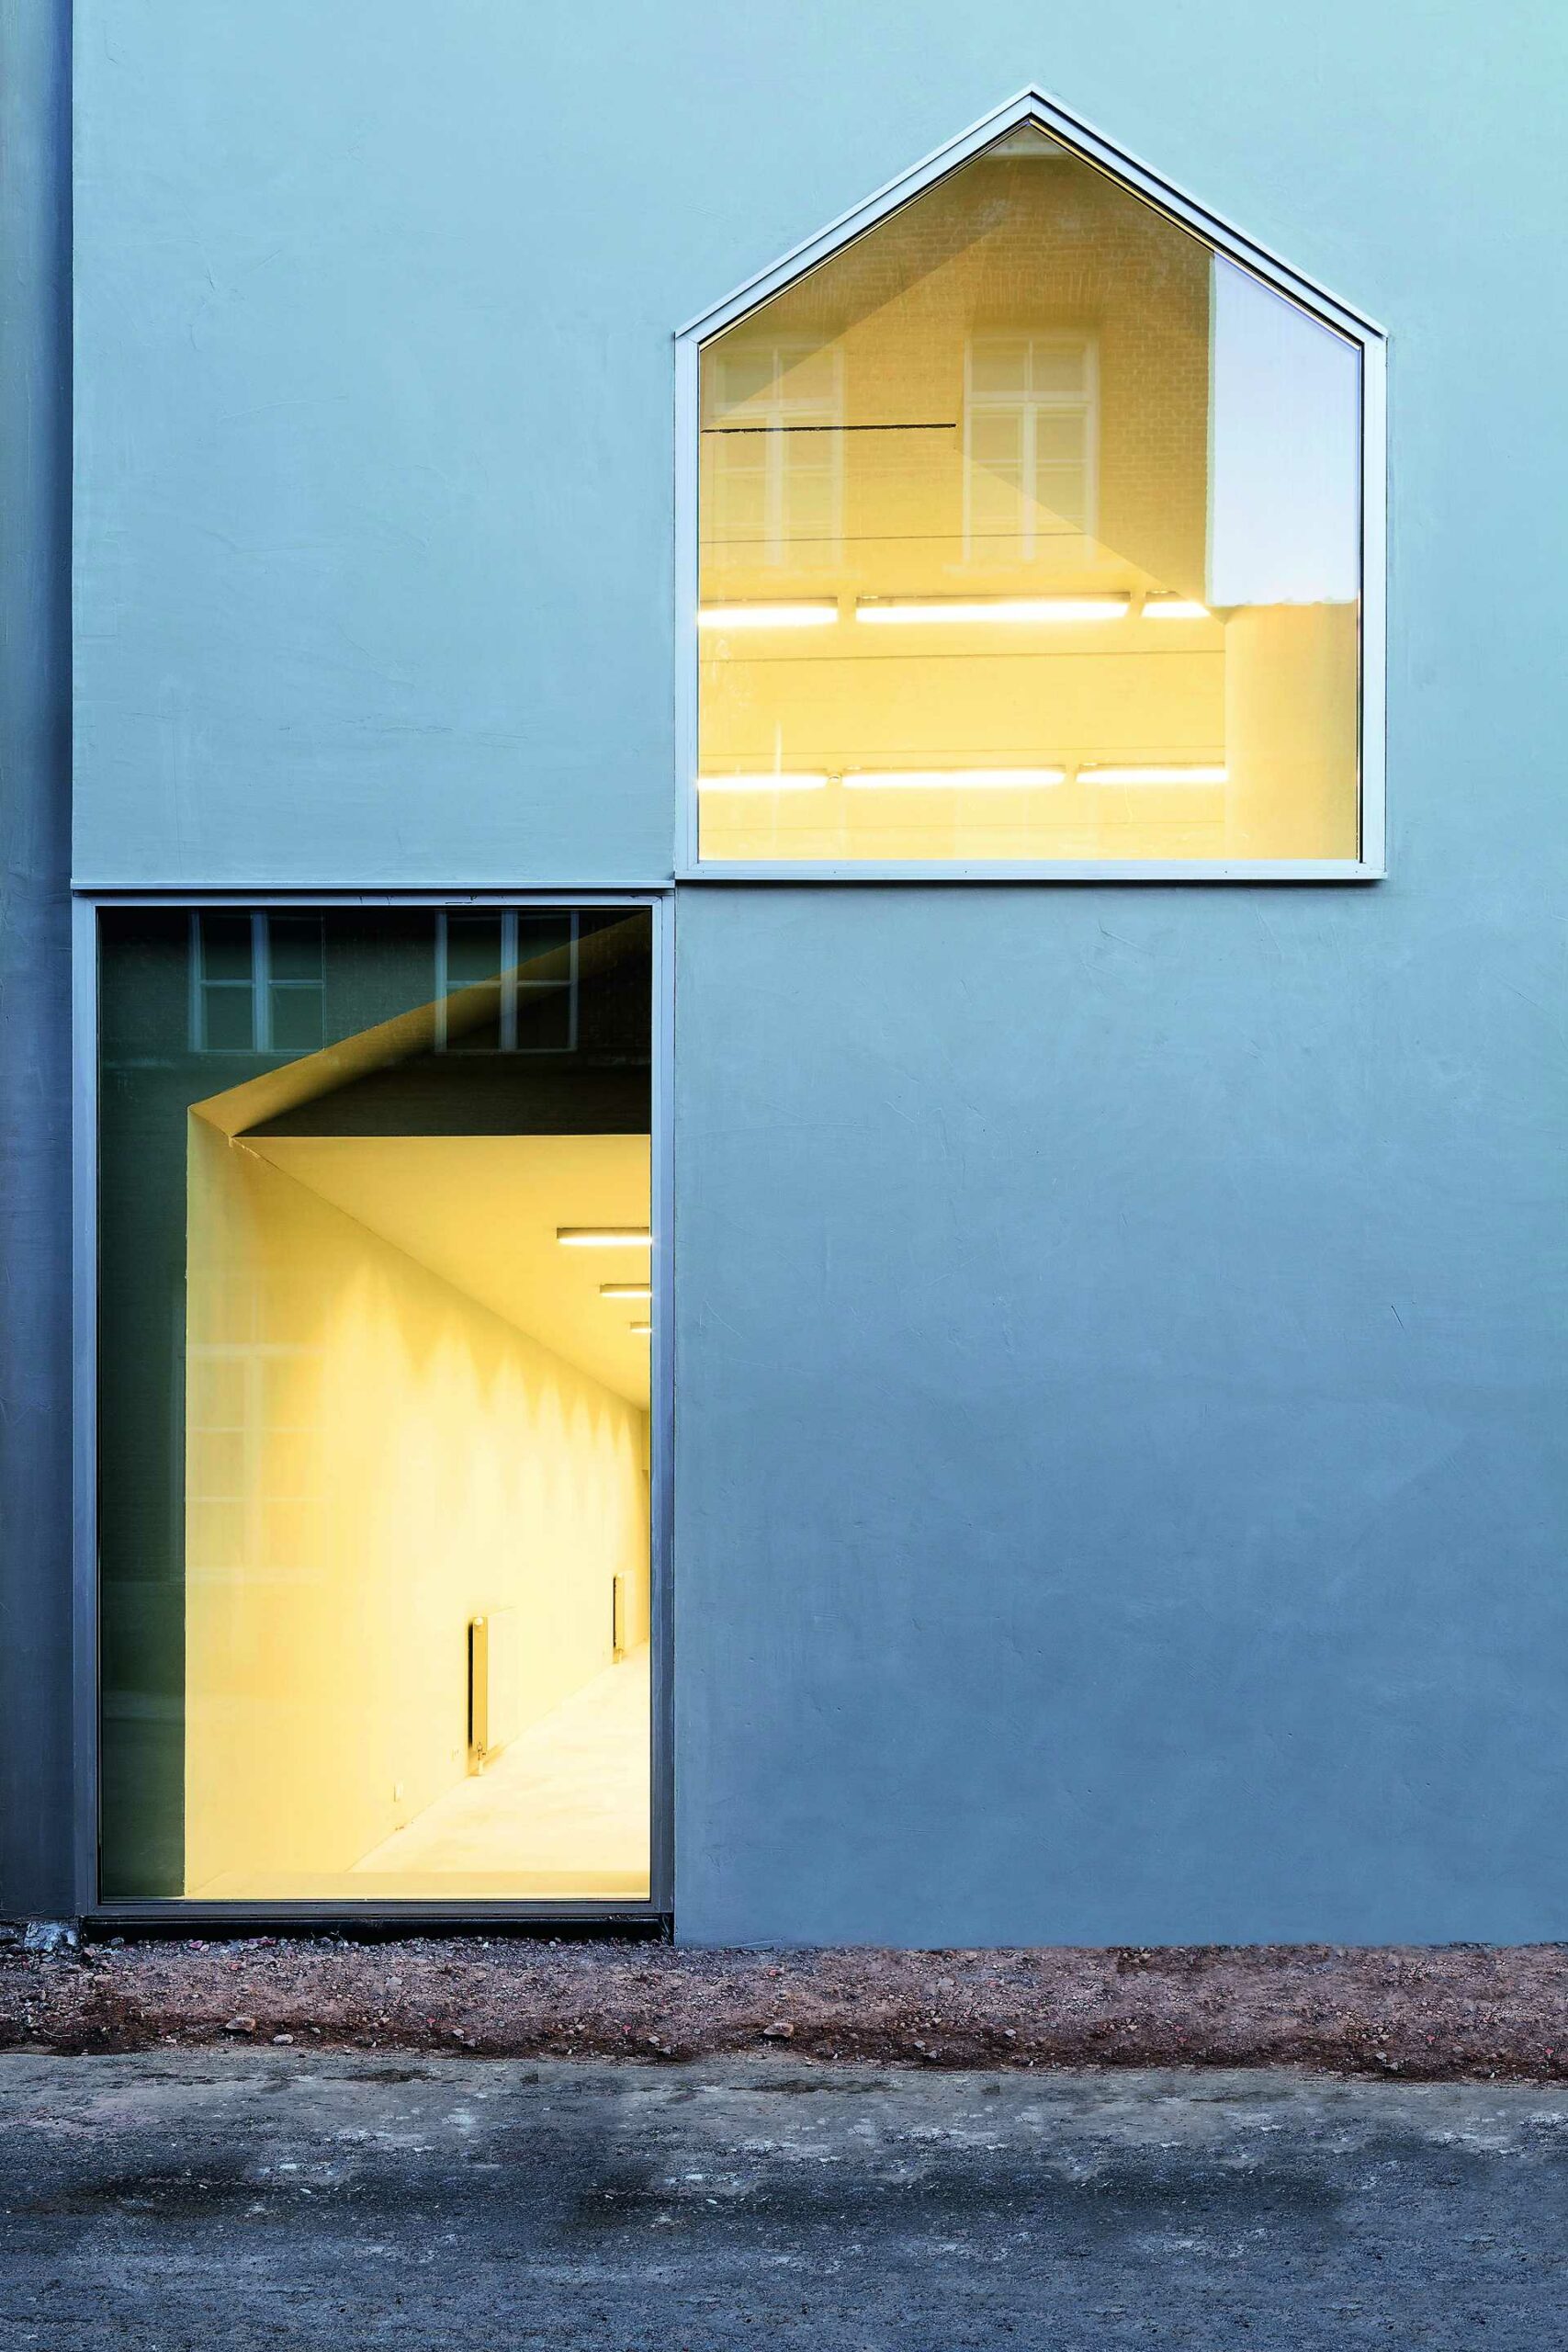 Numero immagine 35 della sezione corrente di Architecture School in Tournai di Cosentino Italia